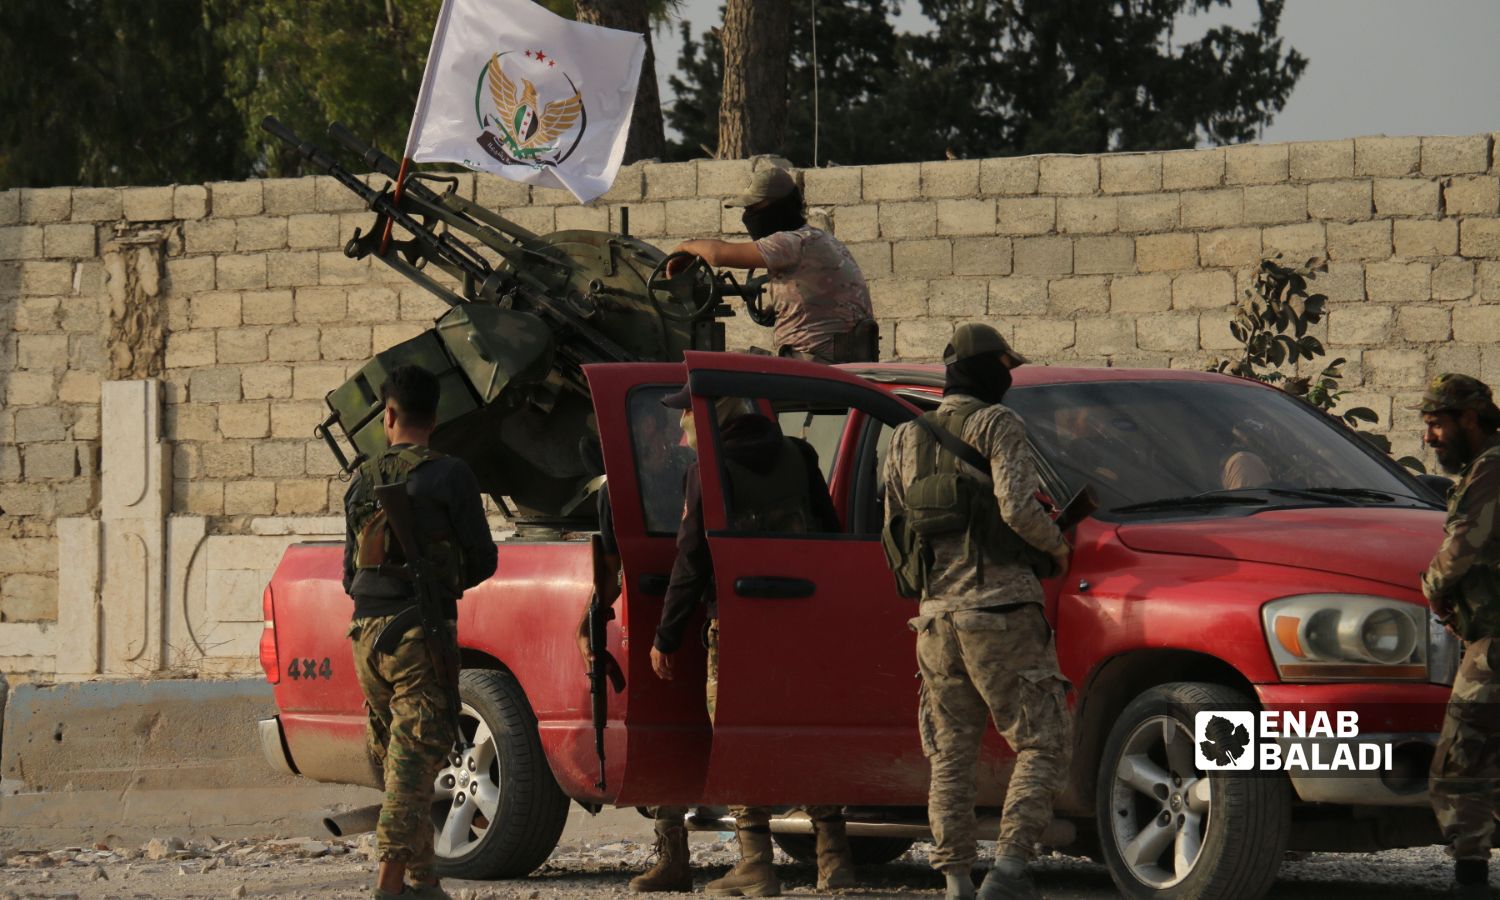 قوات "هيئة ثائرون للتحرير" التابعة لـ"الجيش الوطني السوري" أمام مبنى وزارة الدفاع في بلدة كفر جنة بريف حلب الشمالي -18 من تشرين الأول 2022 (عنب بلدي/ ديان جنباز)